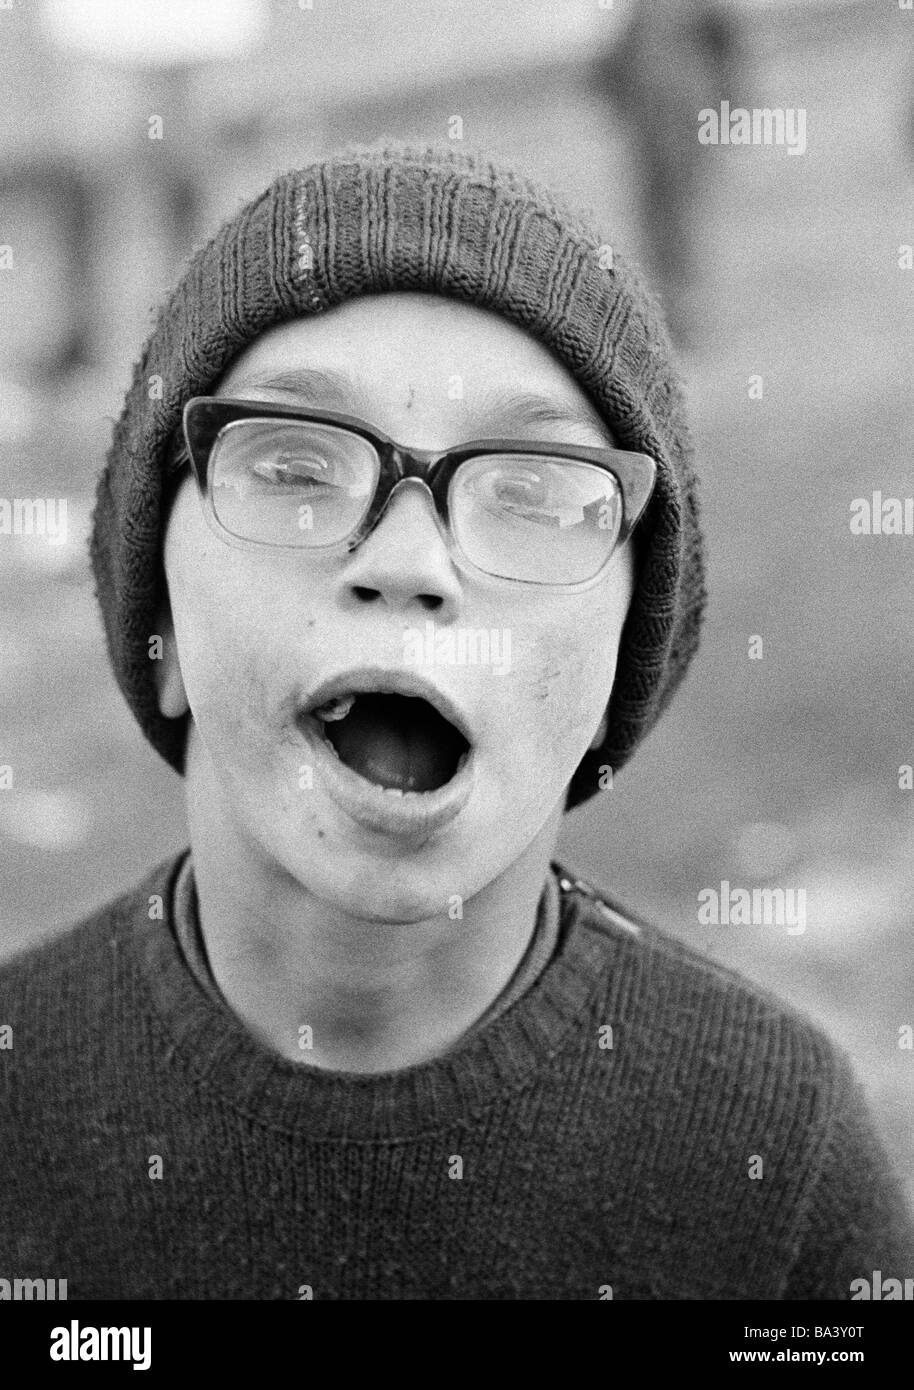 Negli anni settanta, foto in bianco e nero, persone di handicap fisici, Ragazzo con occhiali e wooly hat, aperto bocca, ritratto, di età compresa tra i 10 e i 14 anni Foto Stock